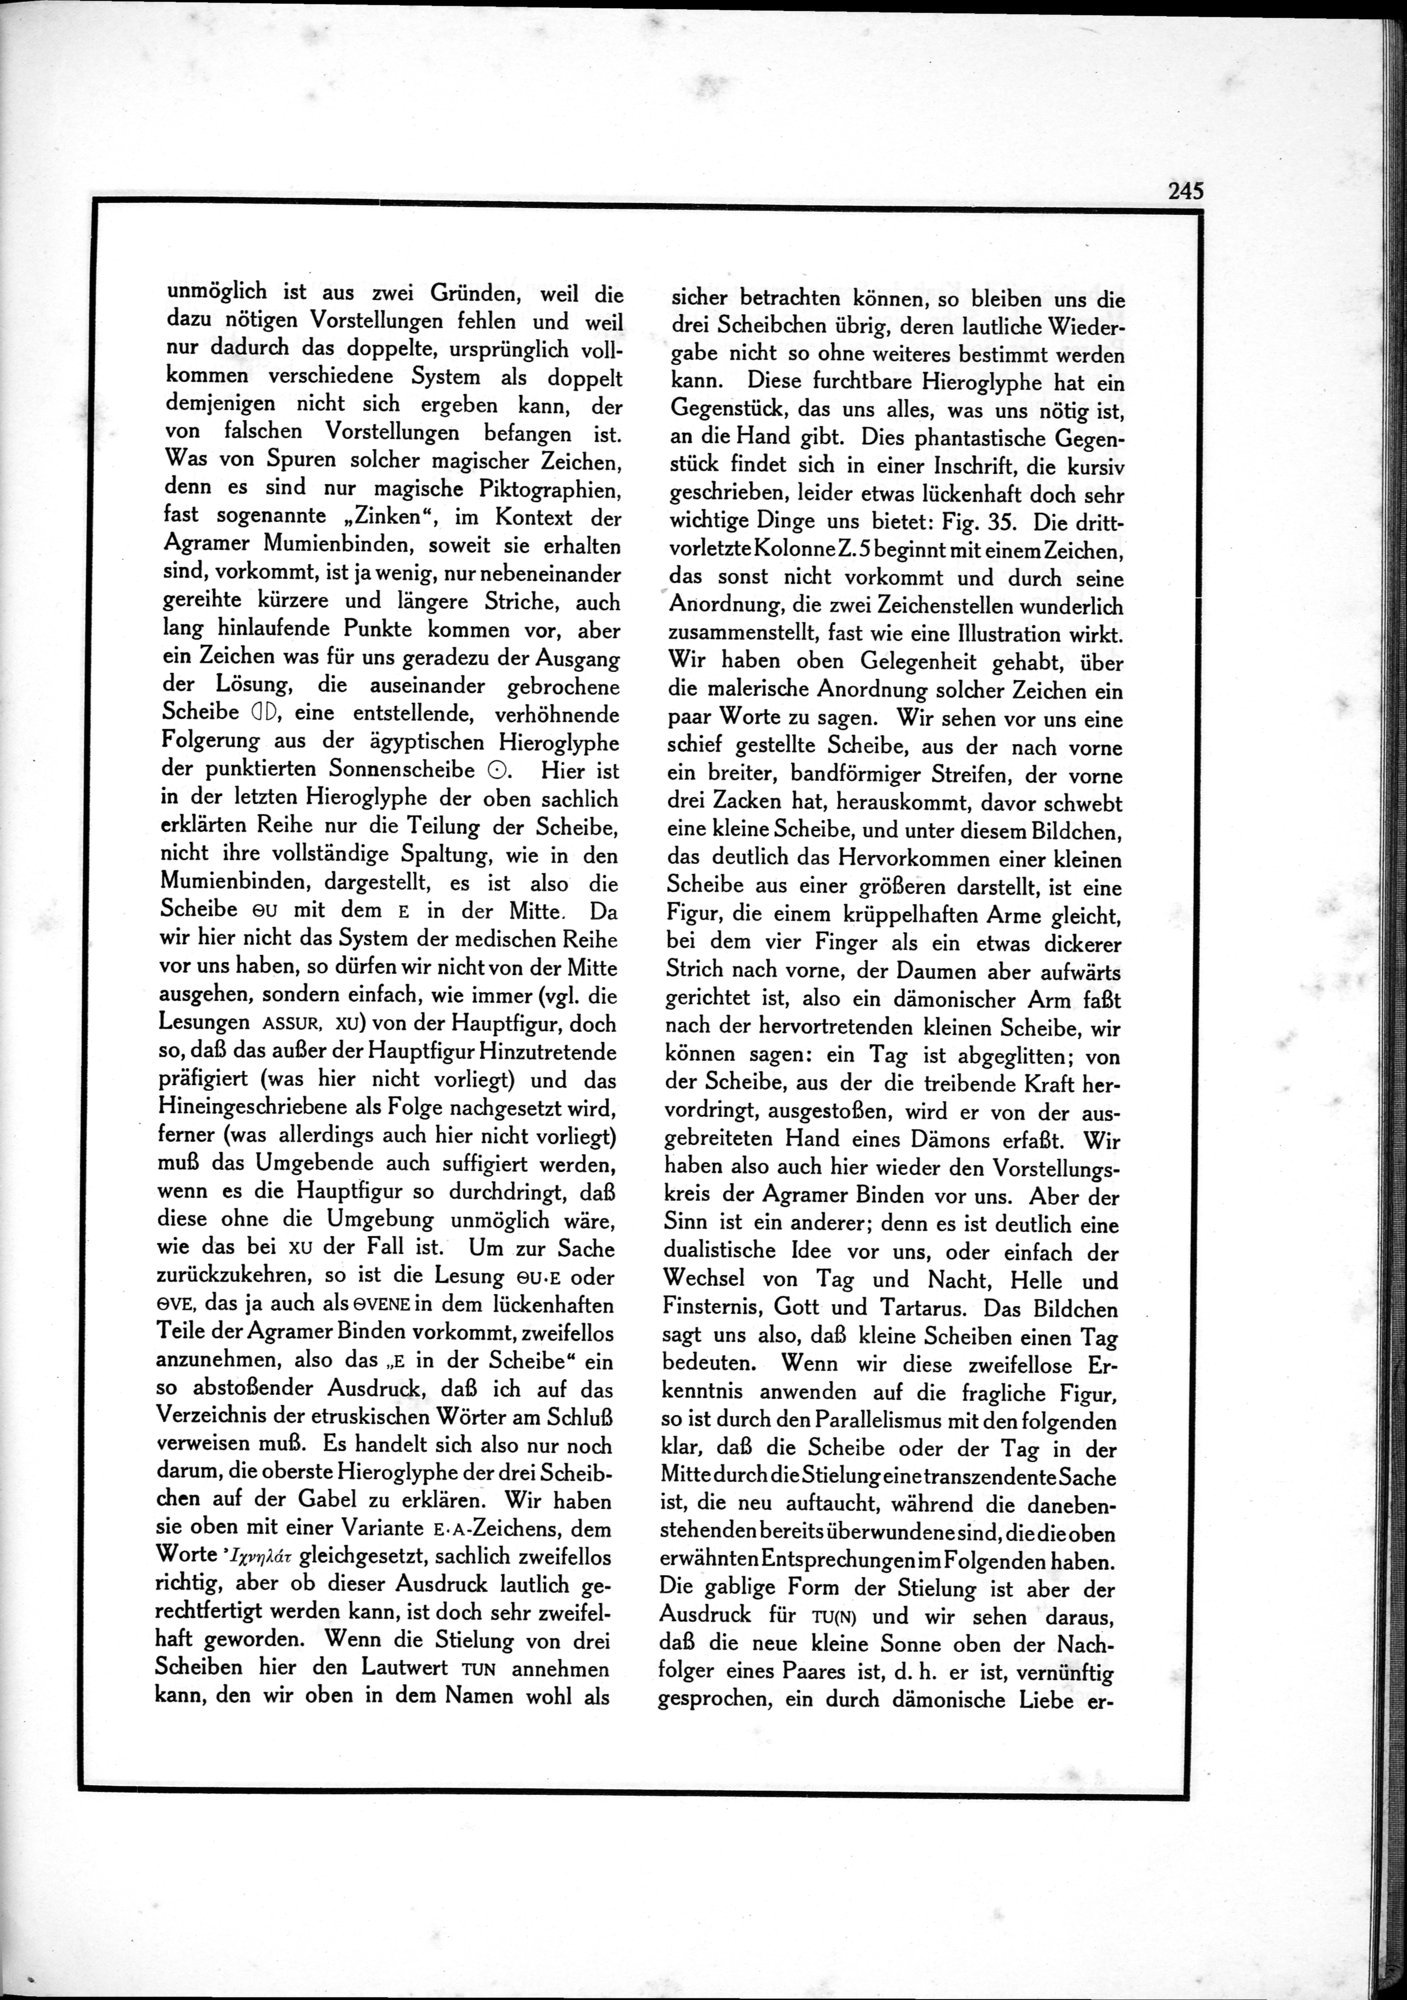 Die Teufel des Avesta und Ihre Beziehungen zur Ikonographie des Buddhismus Zentral-Asiens : vol.1 / Page 249 (Grayscale High Resolution Image)